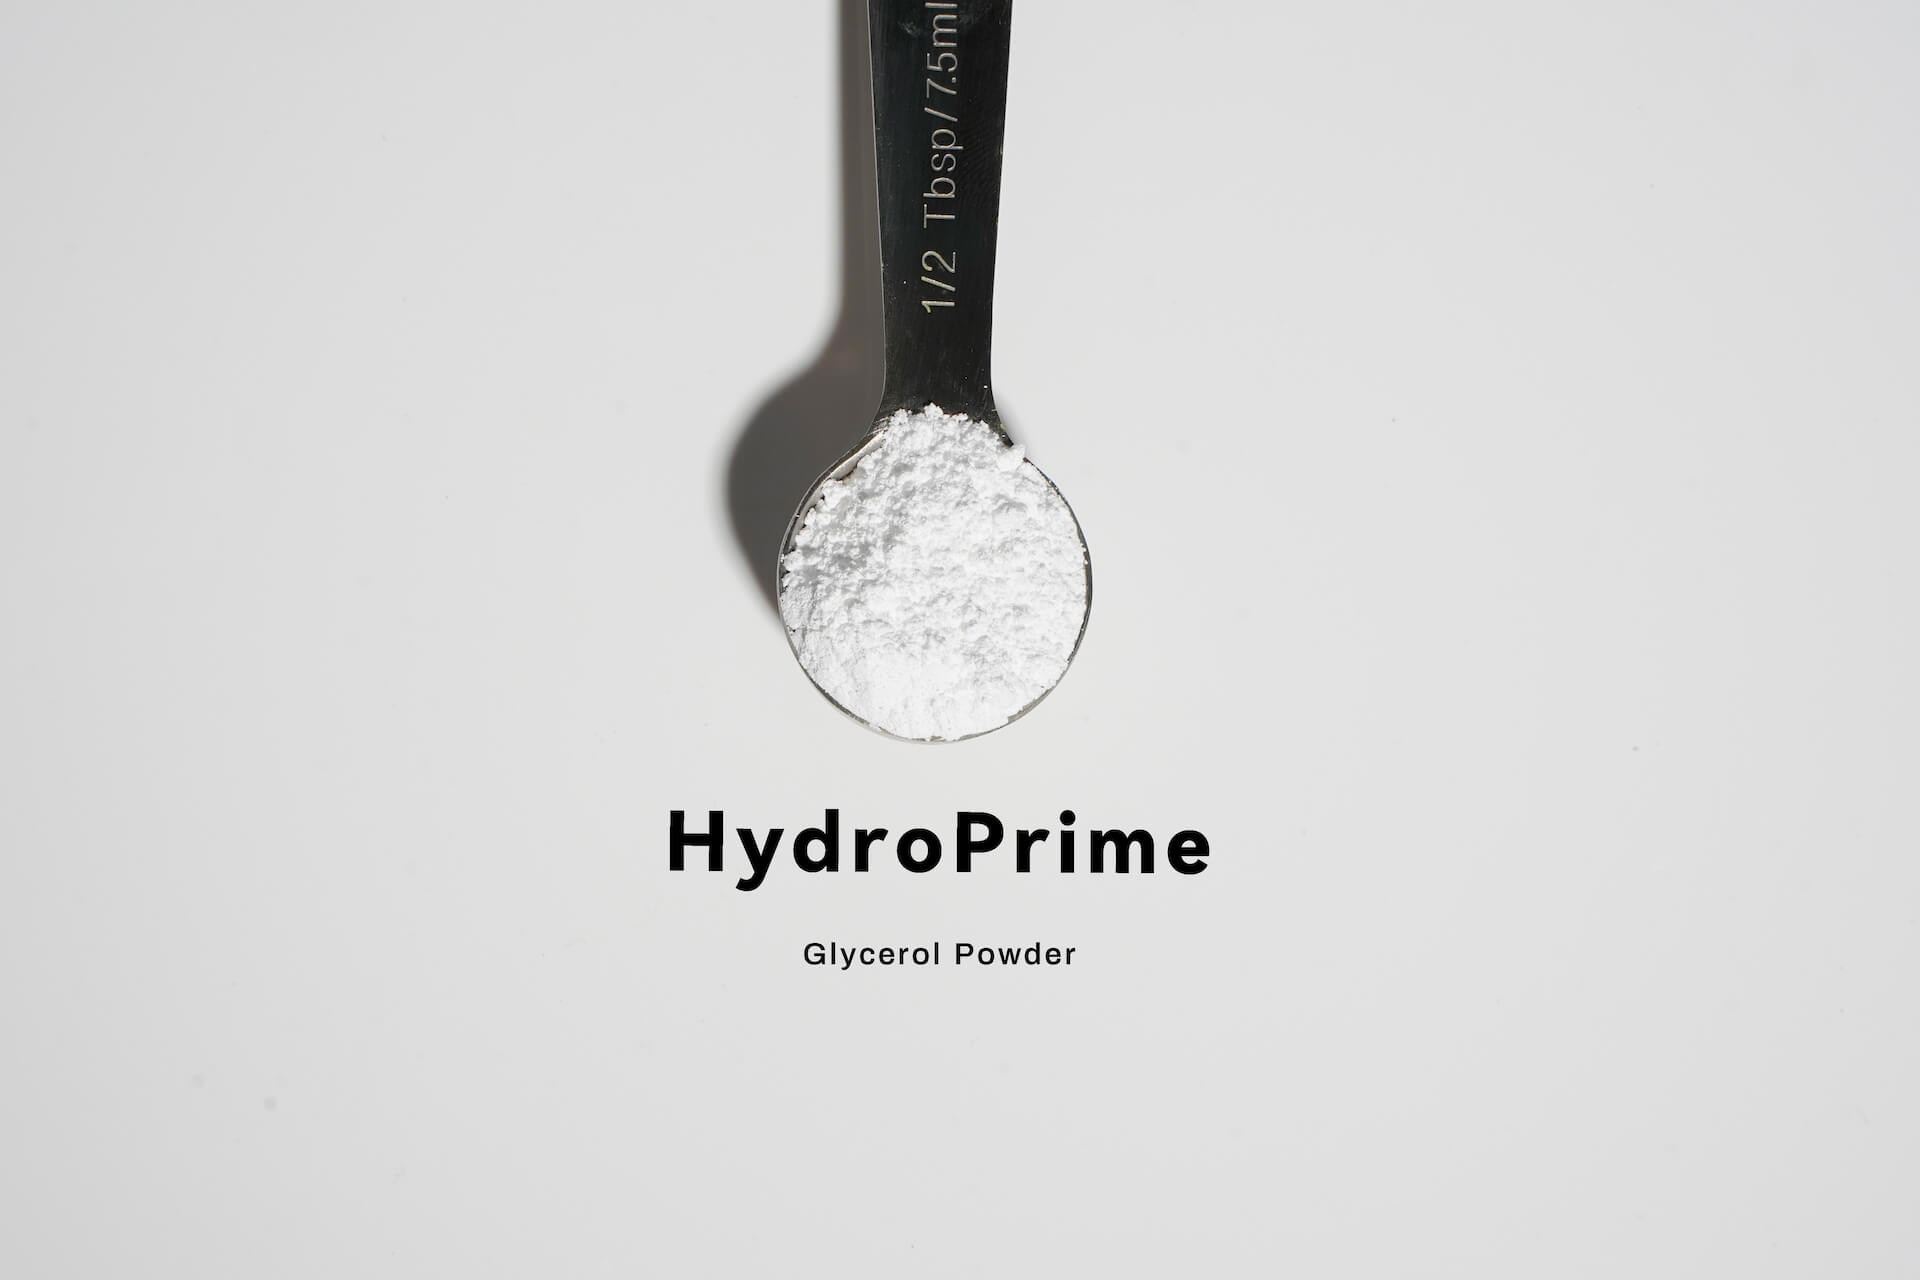 HydroPrime